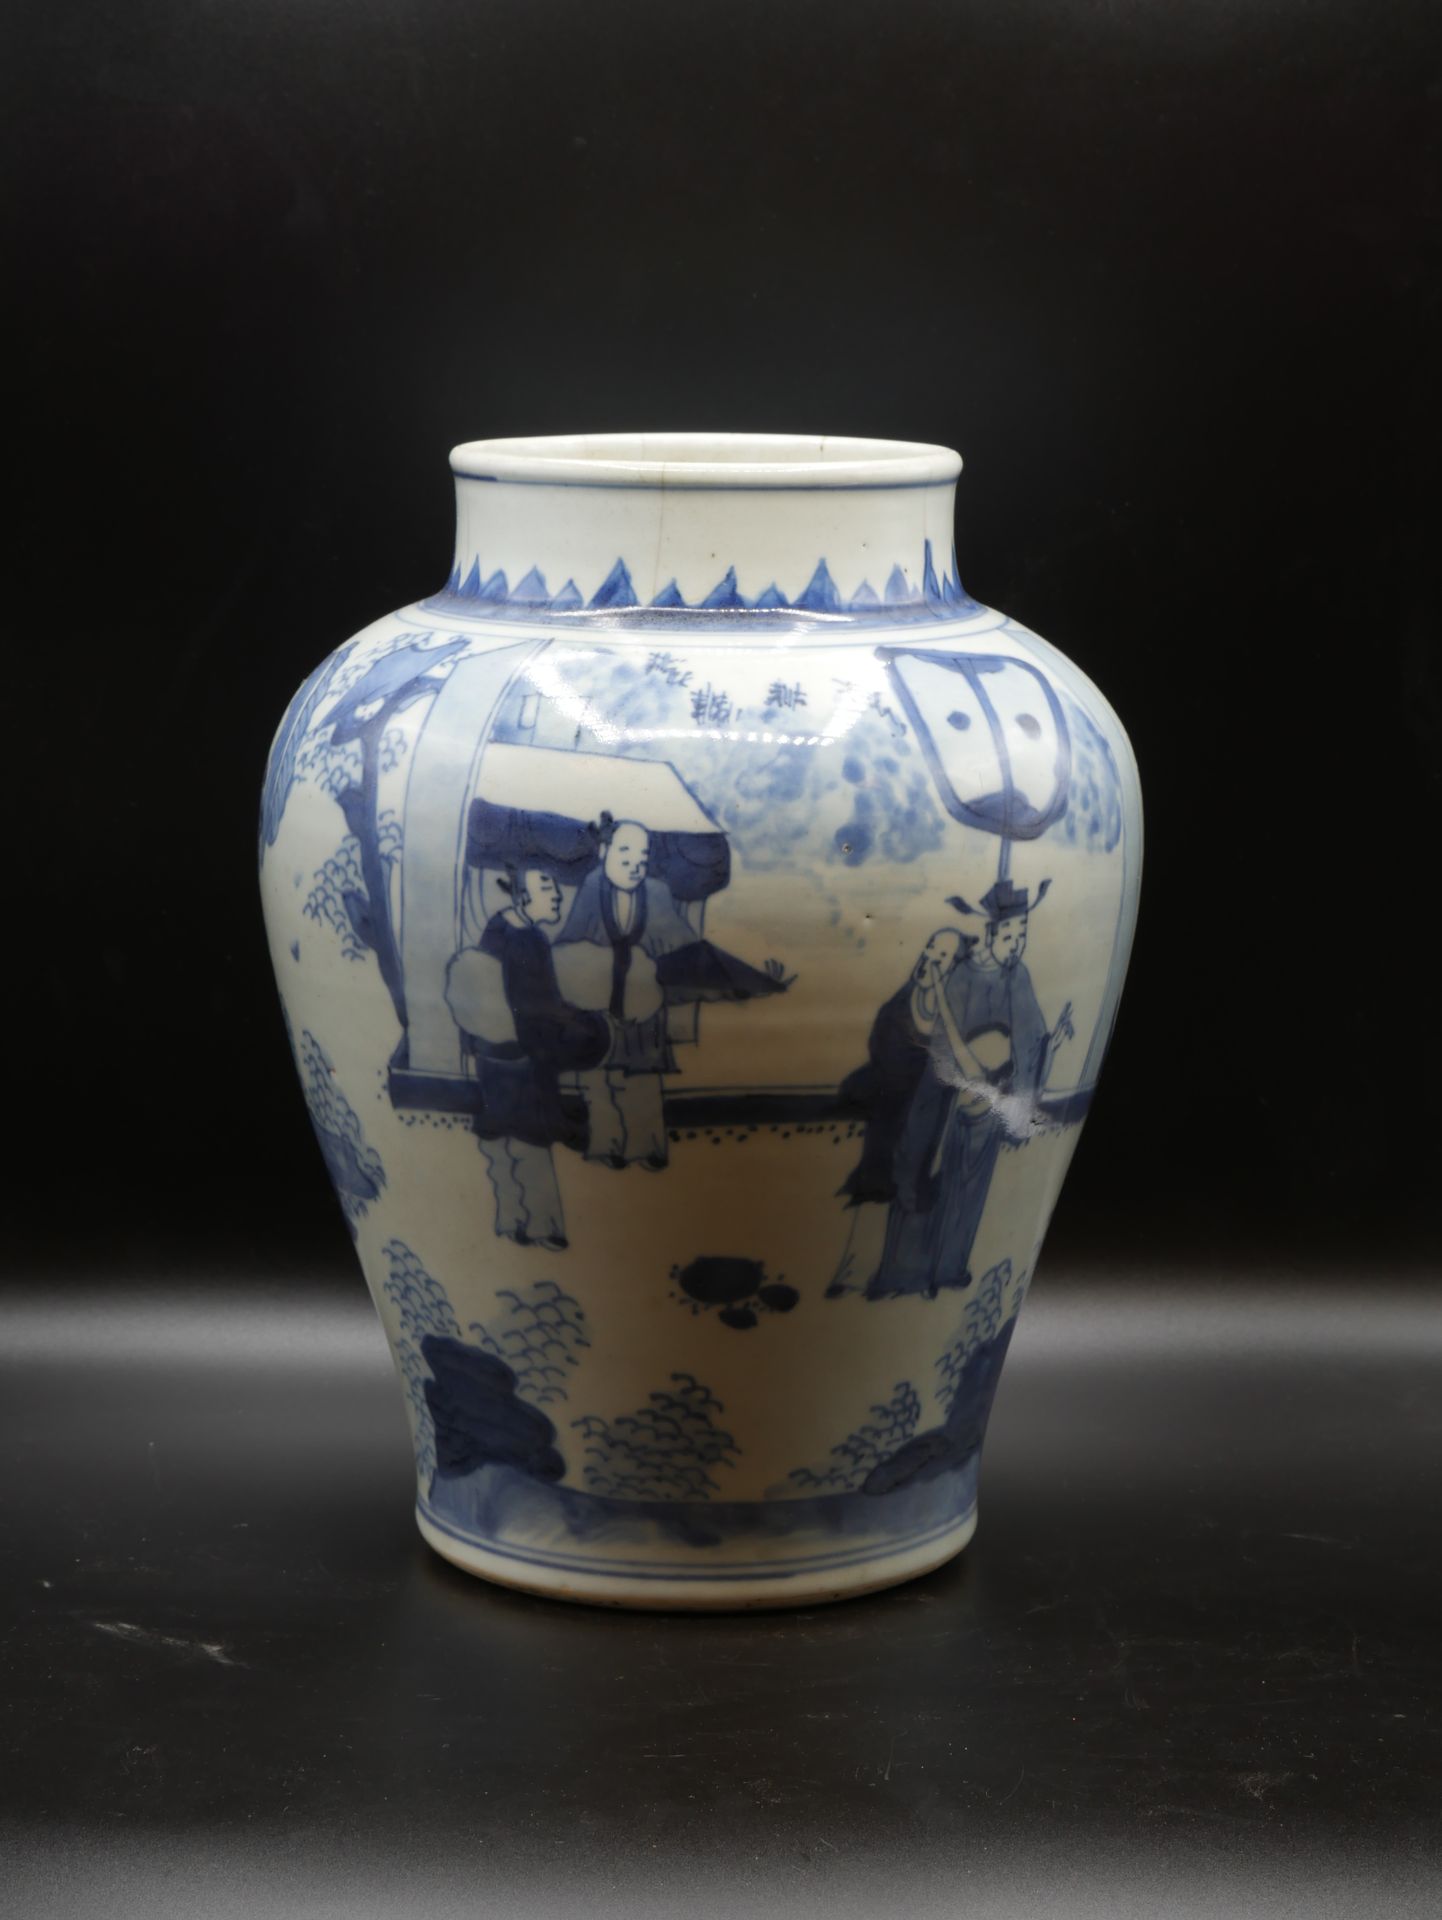 Null 
中国，17世纪。花瓶上有风景中的学者的装饰。蓝白釉瓷器。高度：31厘米。嘴唇边缘有裂缝。